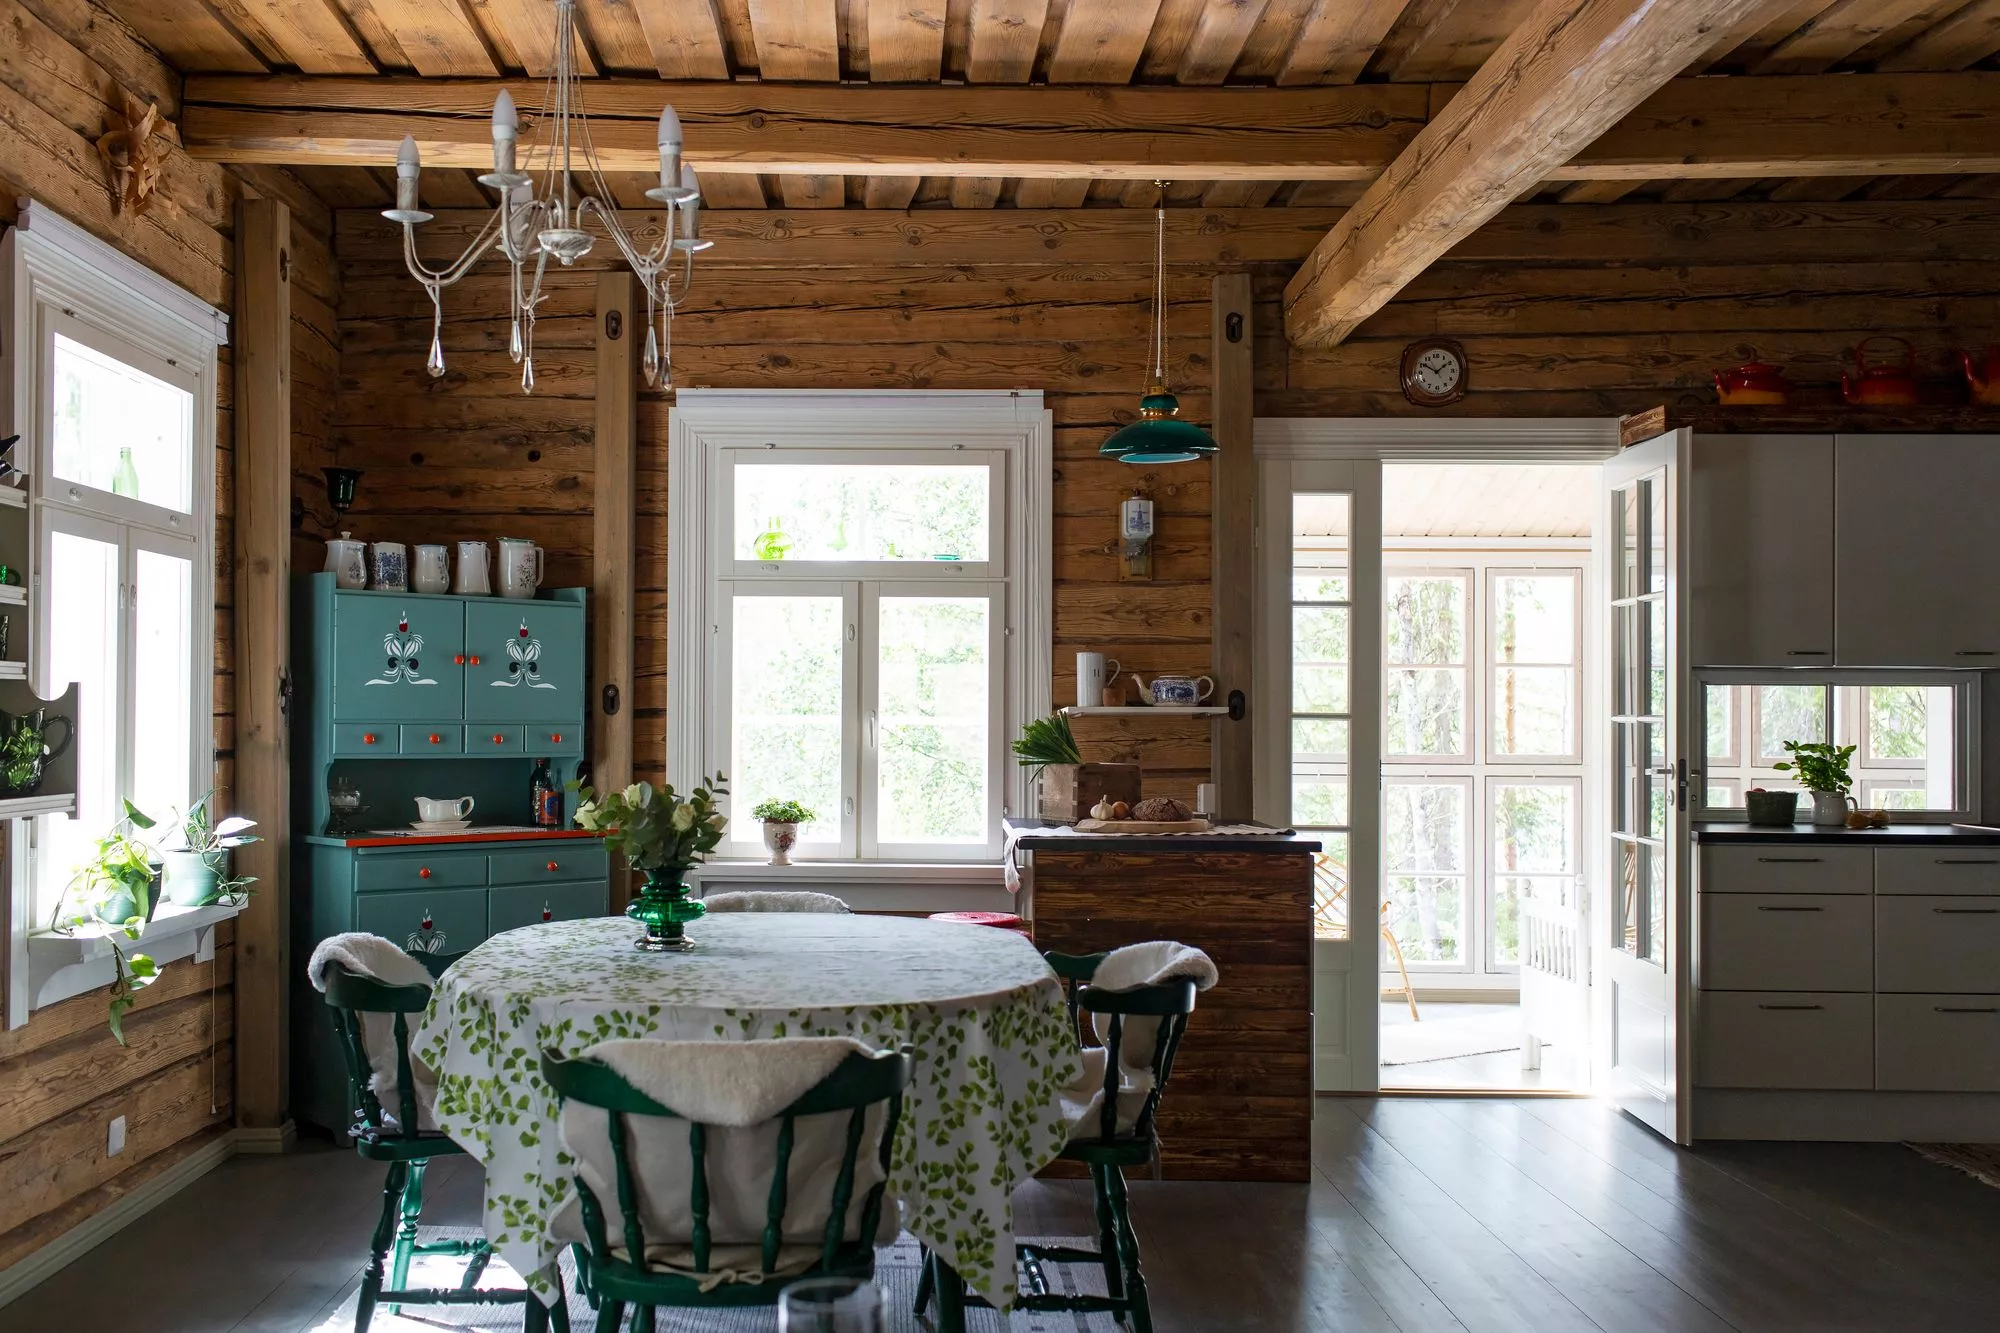 Tilavassa tuvassa viihtyy koko perhe. Vihreä astiakaappi on Armin vanhempien ensimmäinen yhteinen huonekalu. Ruoka­pöytä ja tuolit ovat 1970-luvulla Askon valmistamia. 